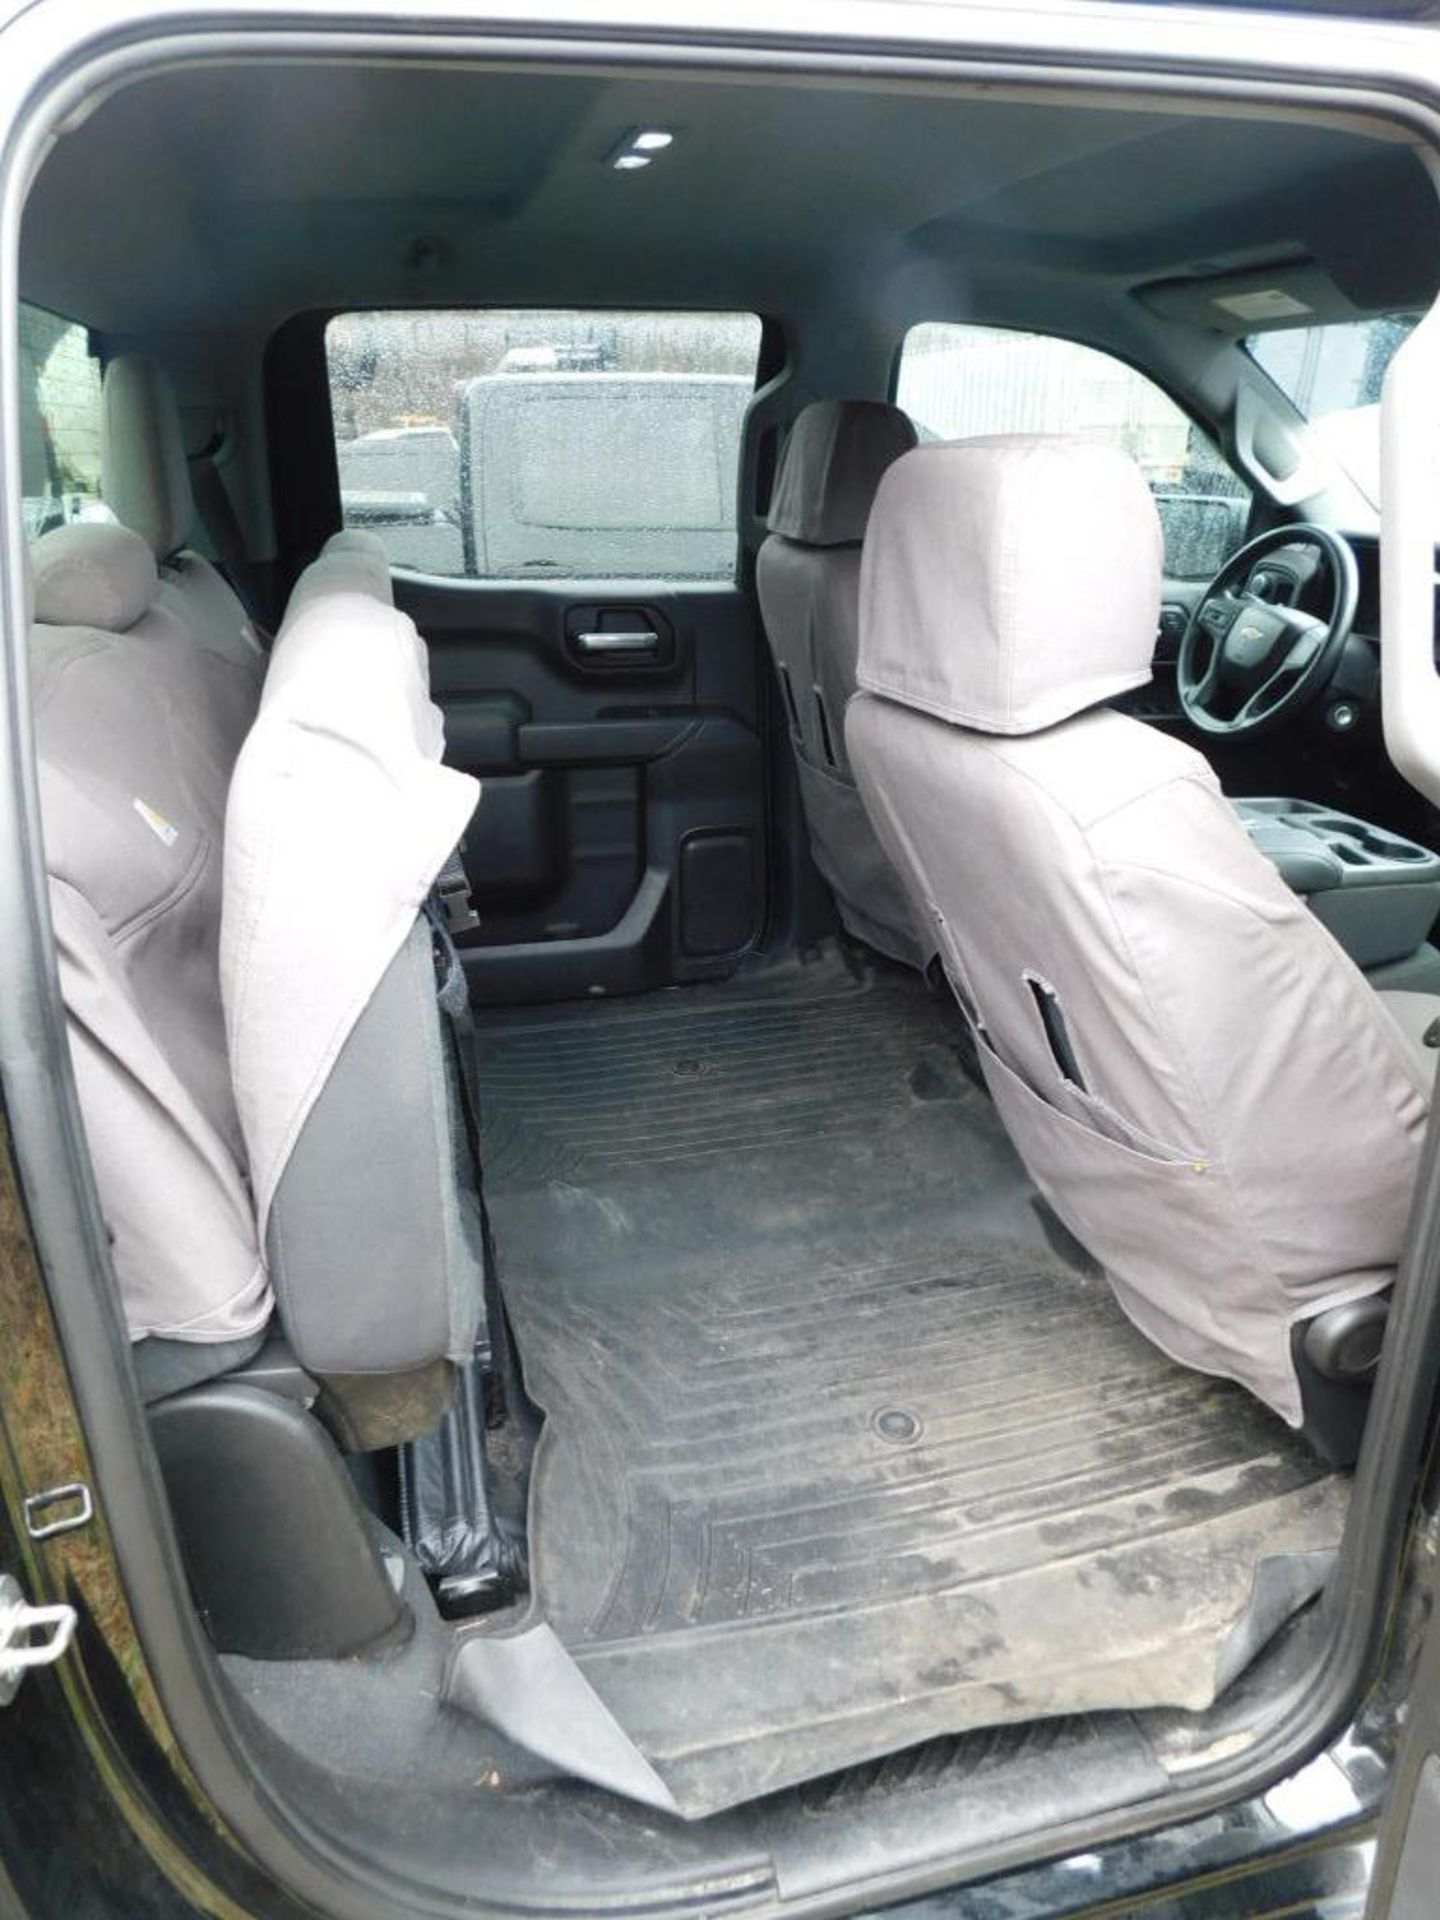 2019 Chevy Silverado 1500 Custom Crew Cab, 4-Wheel Drive, 5.3 Liter, Ecotec 3, V8 Gasoline Motor, Au - Image 11 of 12